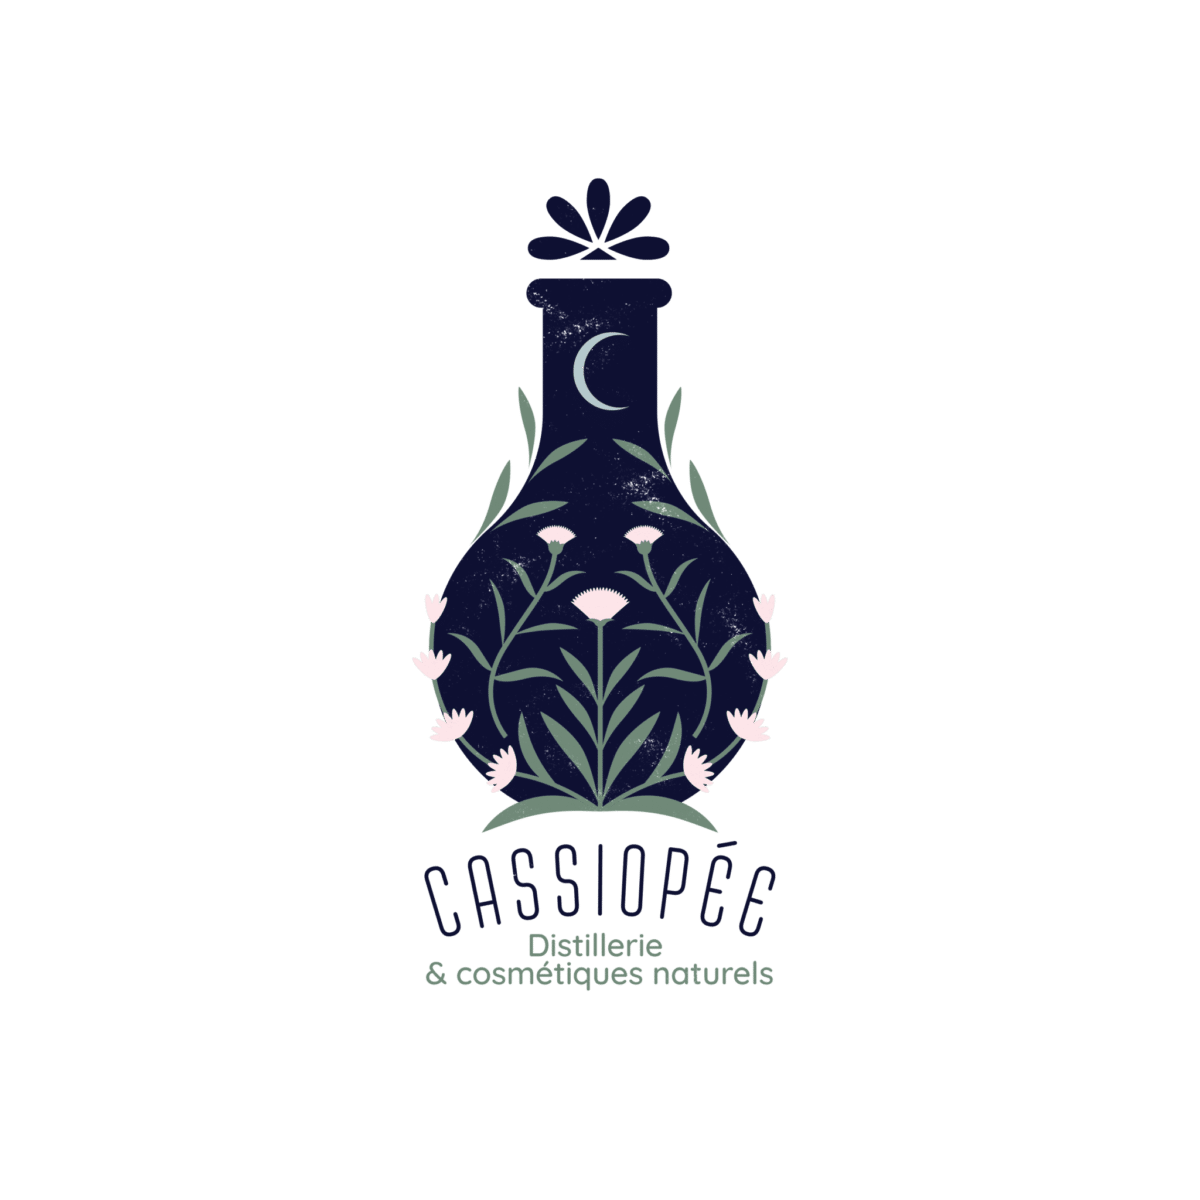 CASSIOPEE LogoBaseline FondTransparent RVB - Cassiopée